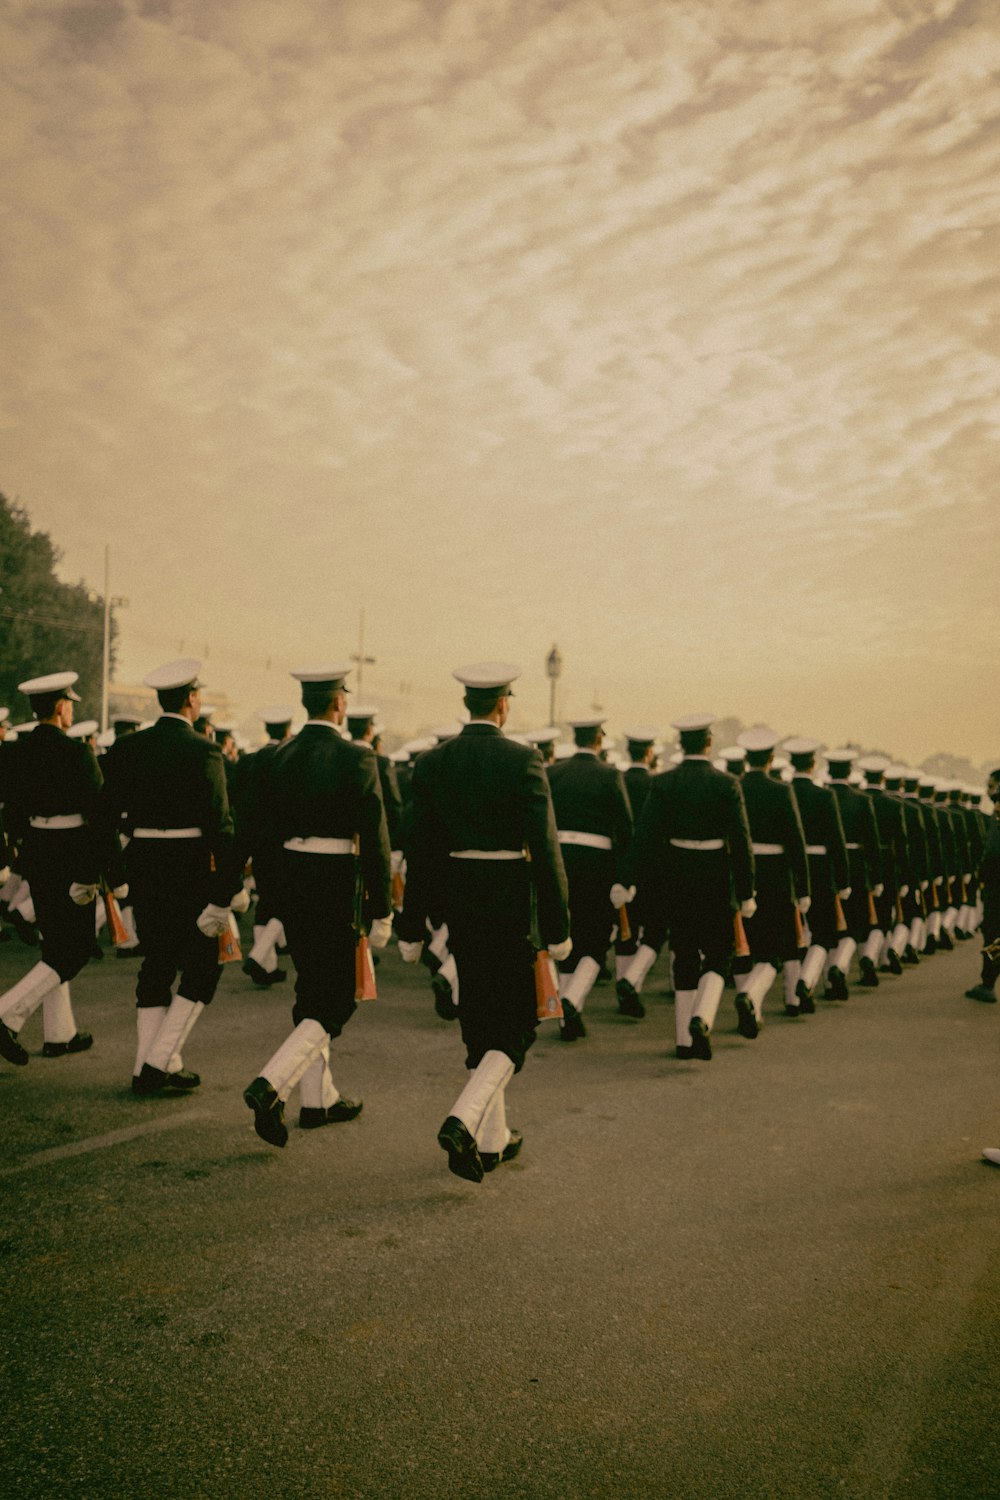 people in cadet uniform walking in line